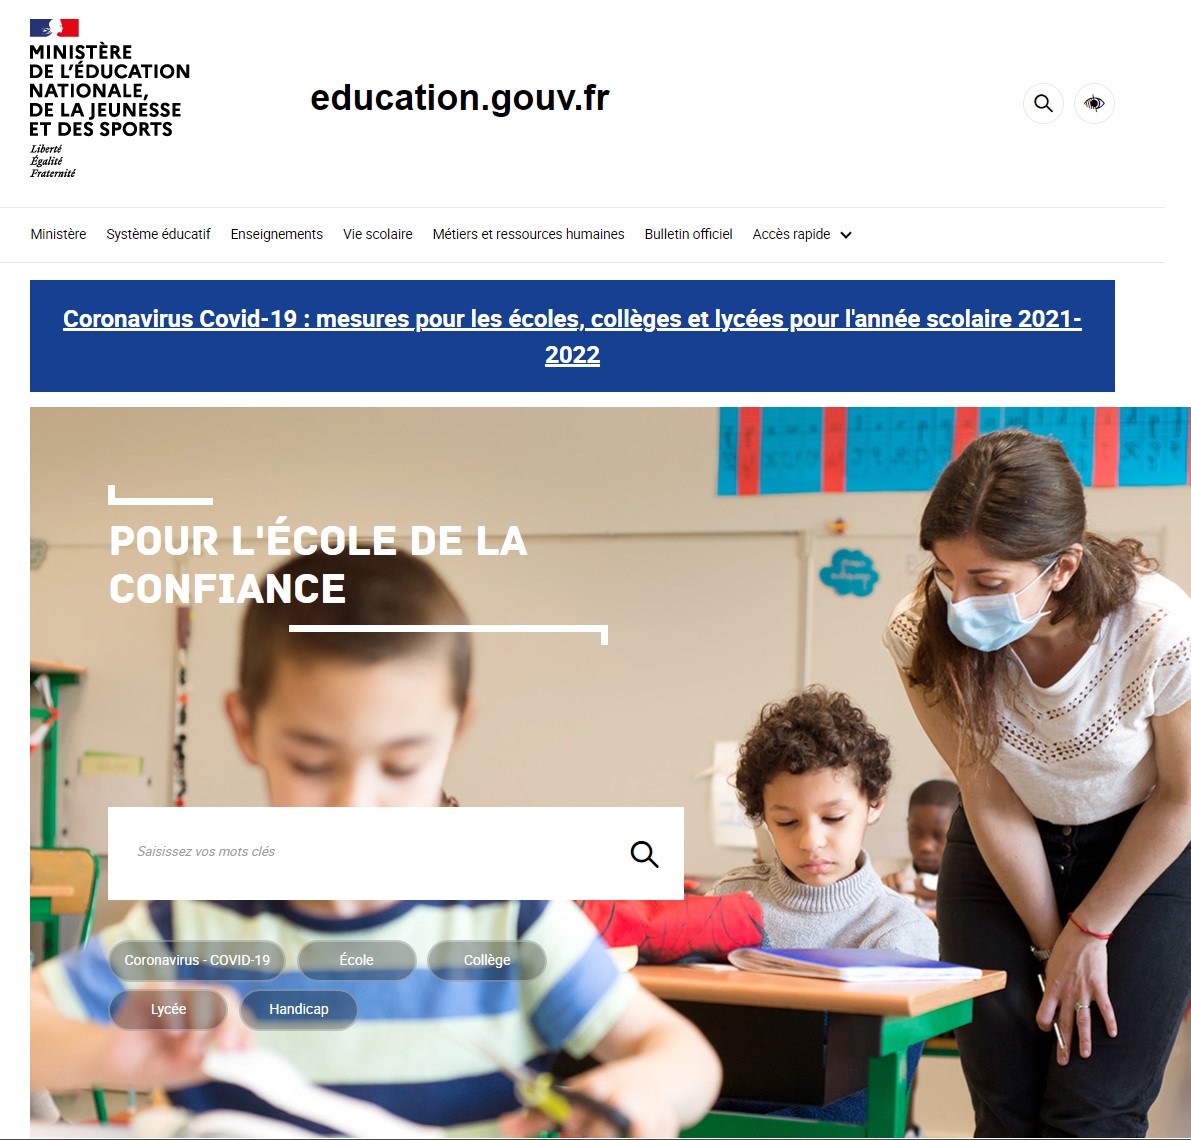 Site education.gouv.fr le 01 janvier 2022 selon le site Weybackmachine